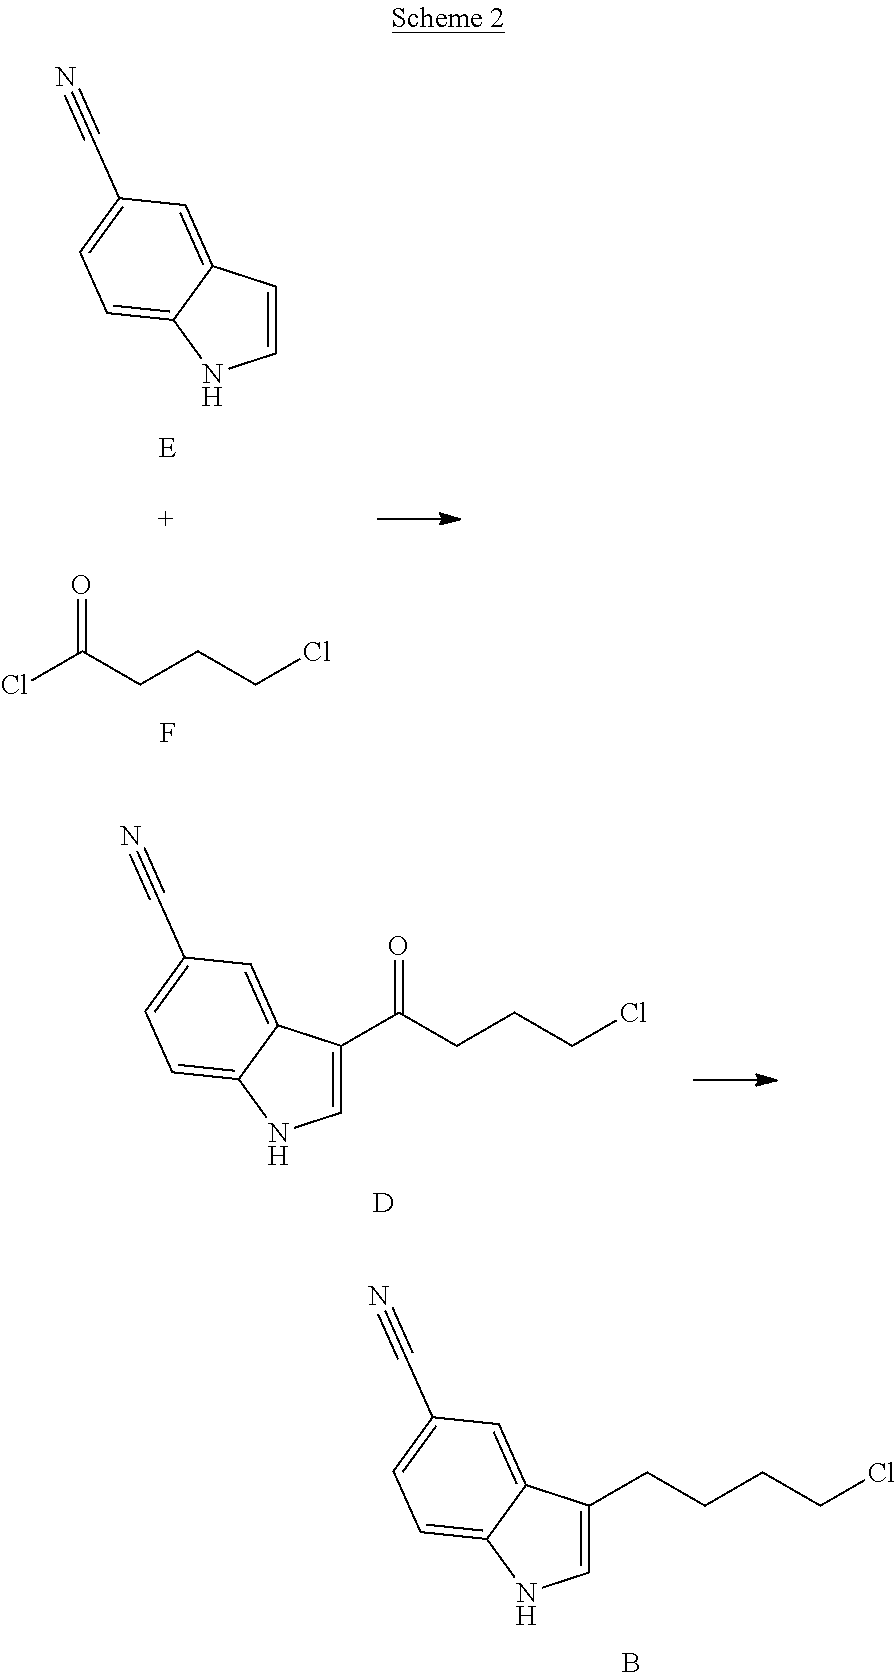 Synthesis of a serotonin reuptake inhibitor